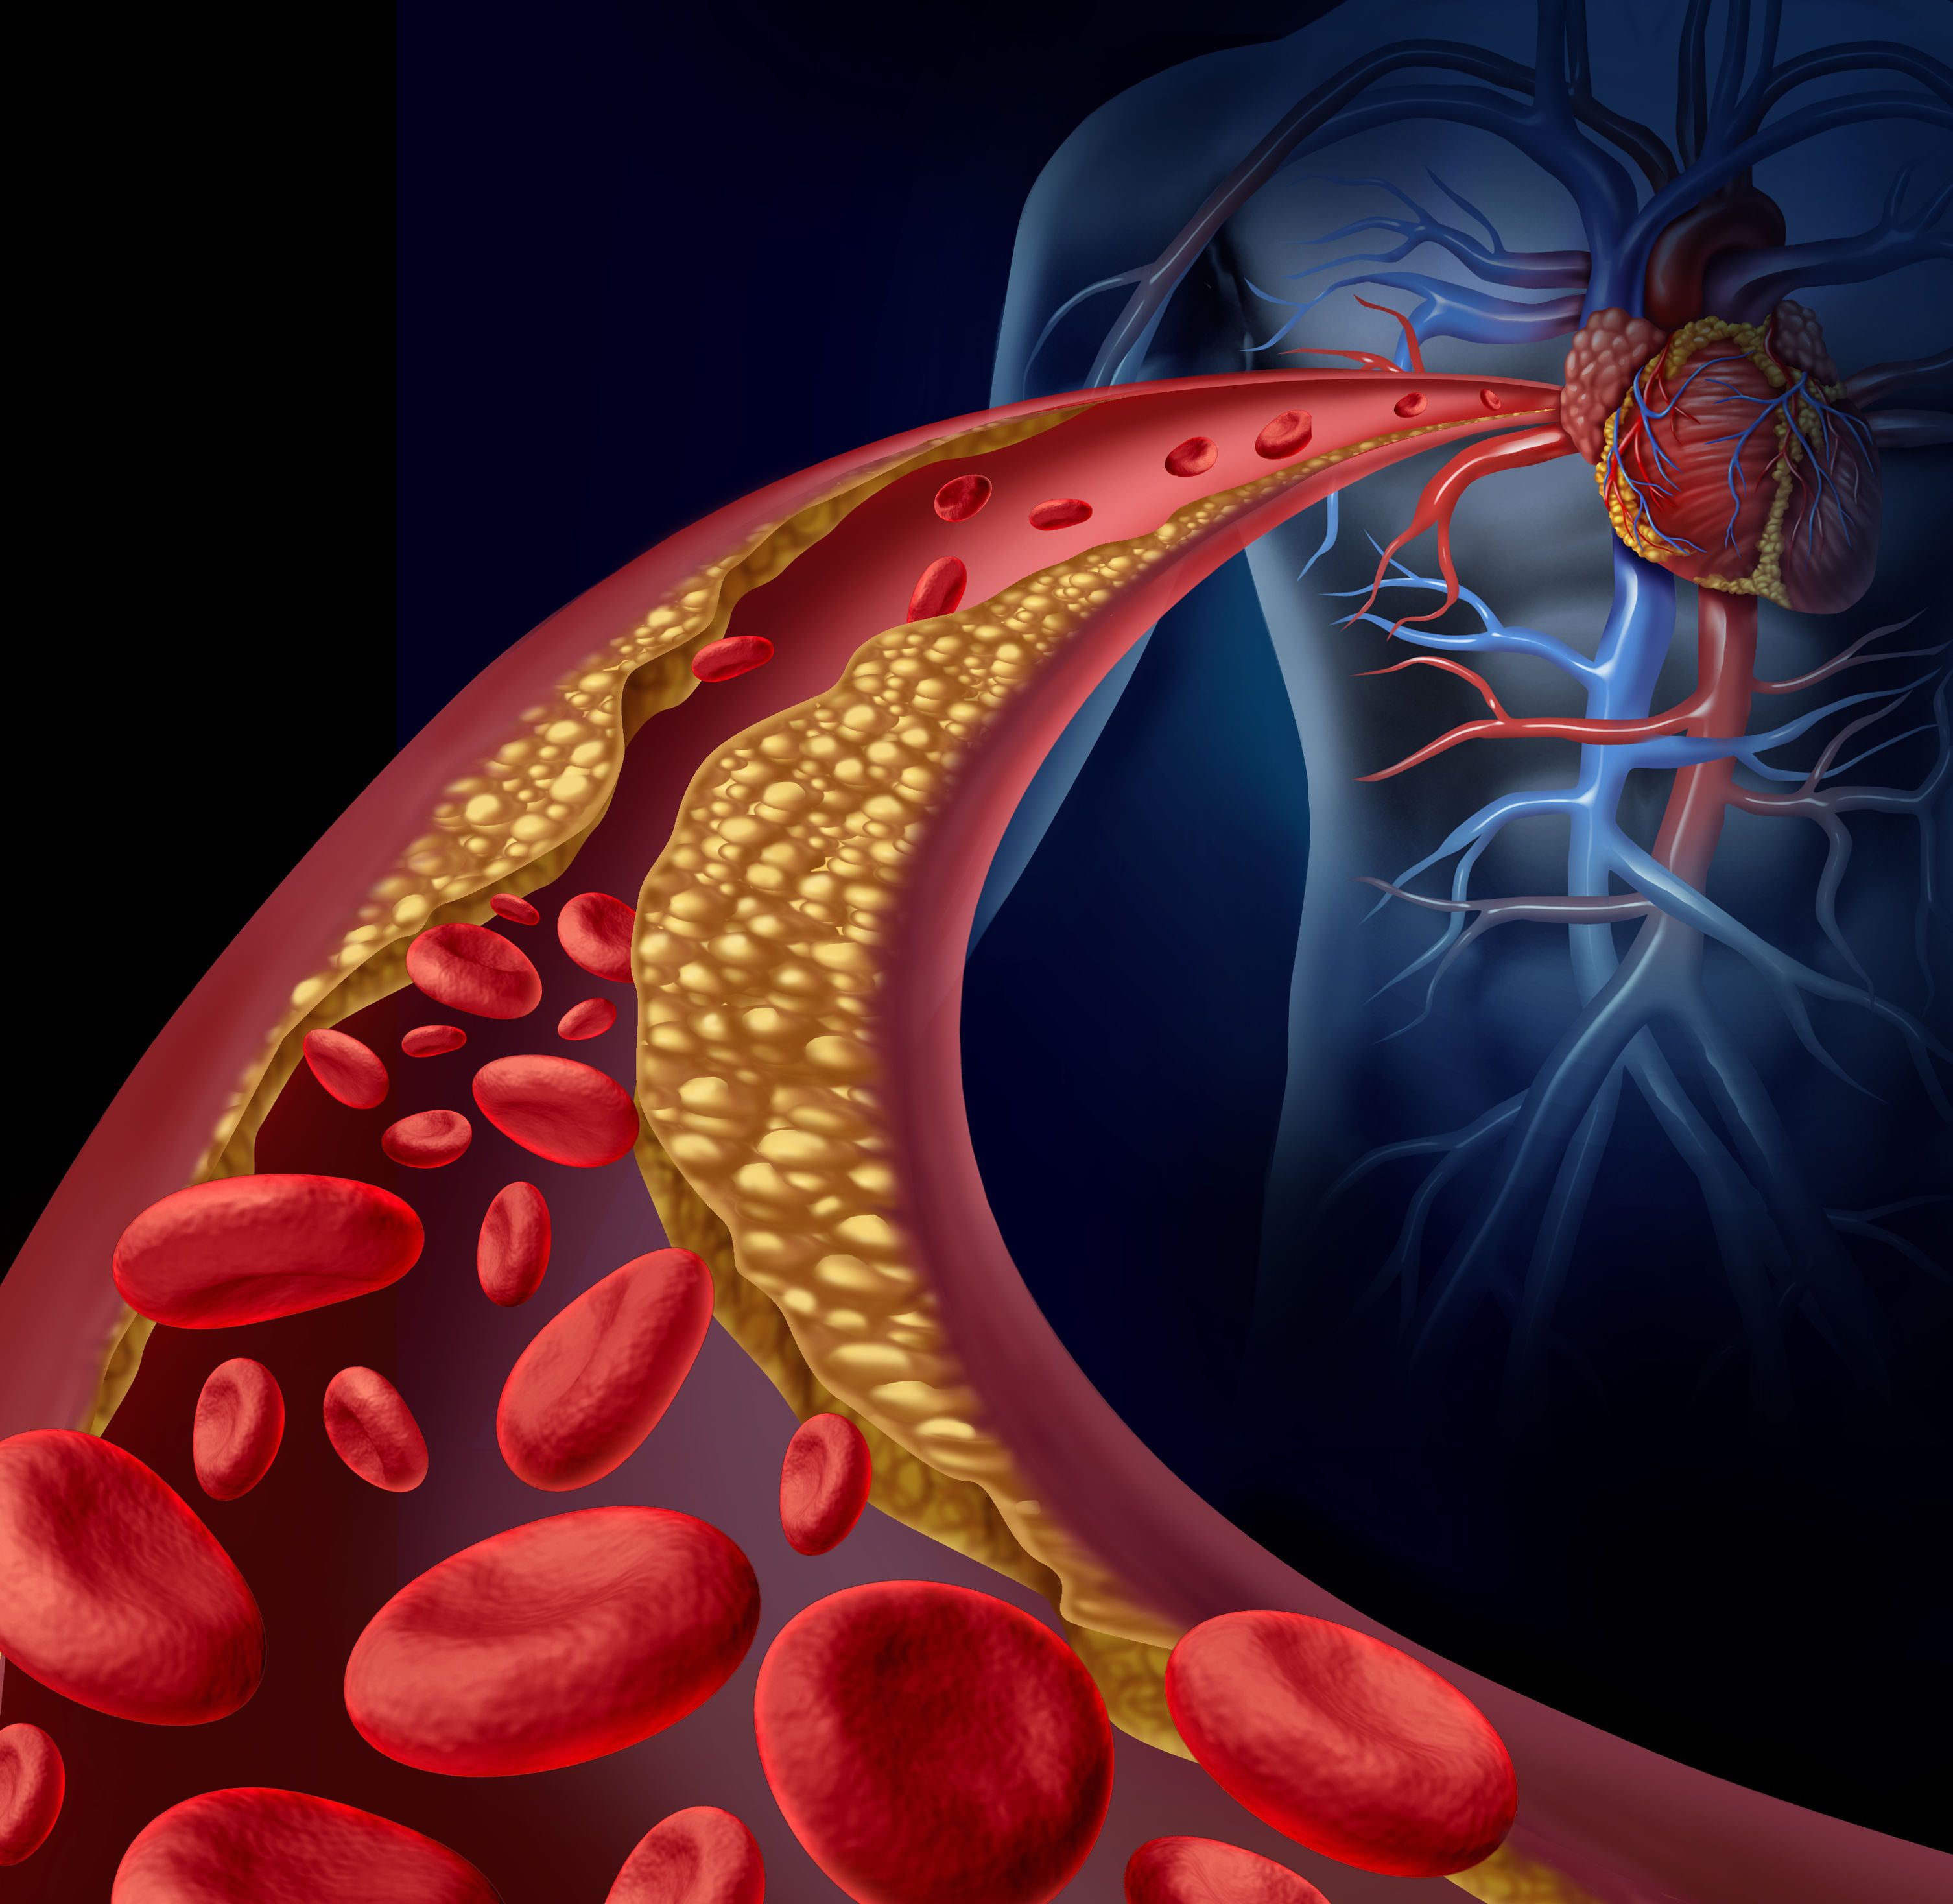 心血管暢通是健康之本，橡膠樹種子油可以預防與治療心血管疾病